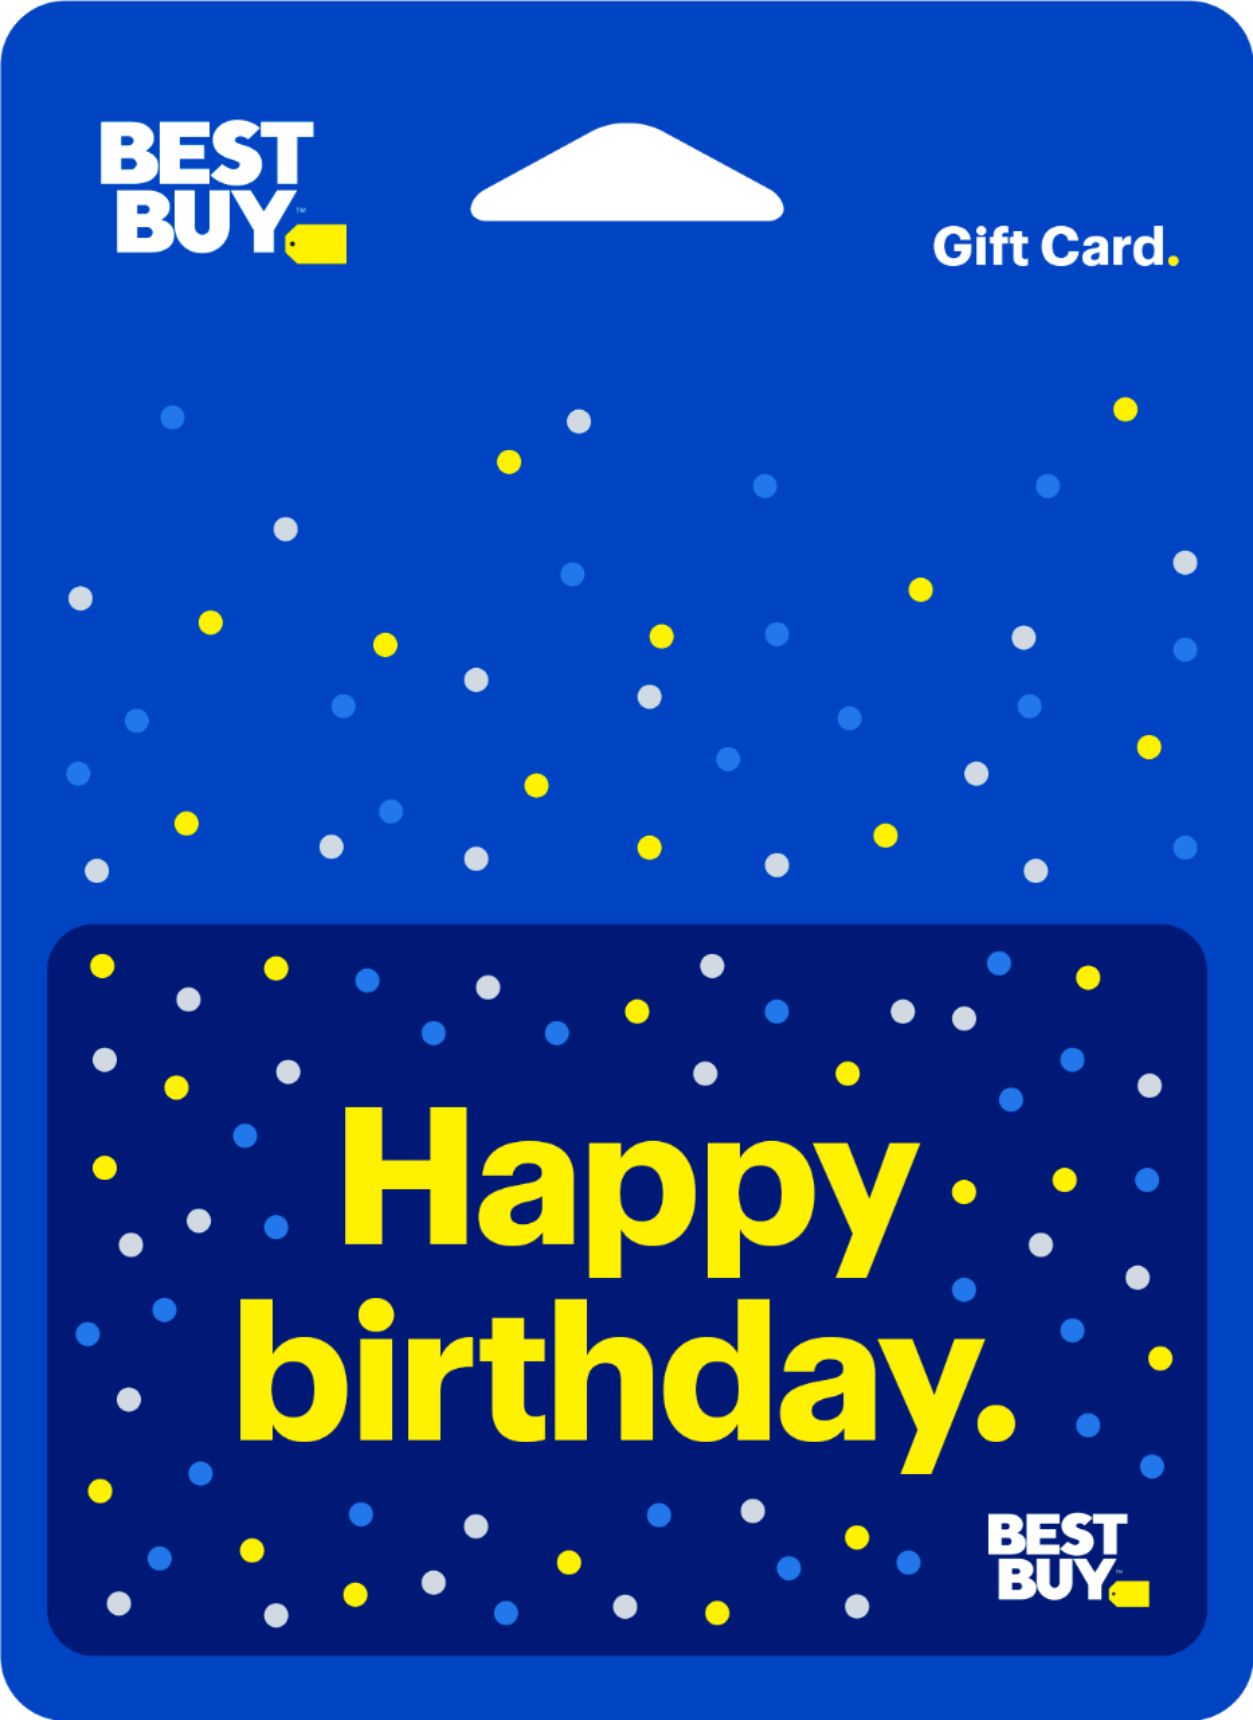 $100 Gift Card [Digital]  $100 DDP - Best Buy